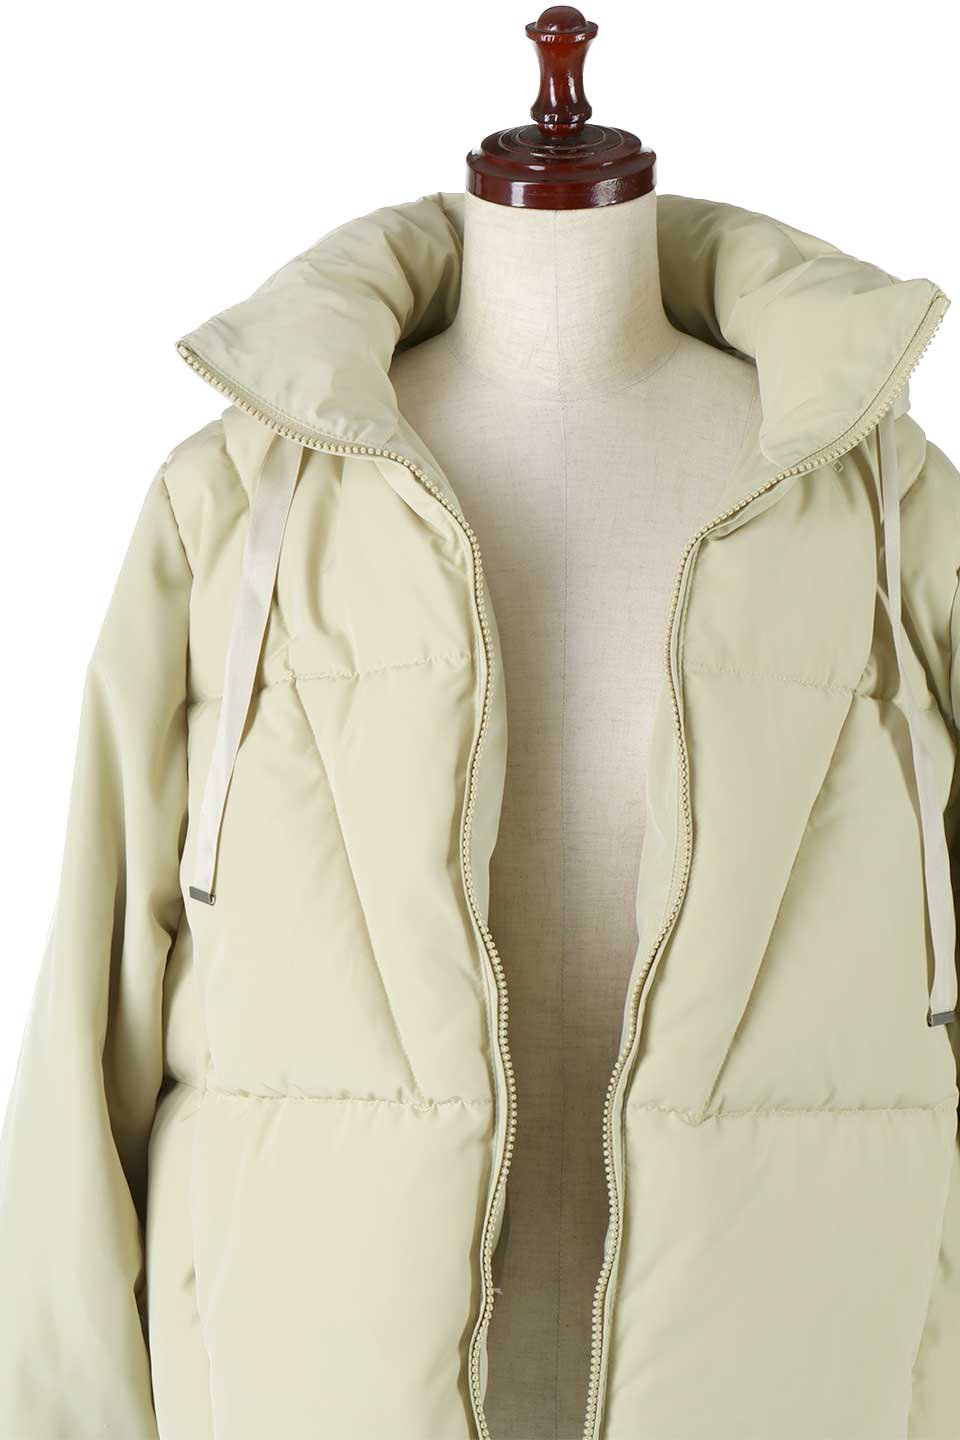 SORONAShortPufferJacketソロナ中綿・ショートジャケット大人カジュアルに最適な海外ファッションのothers（その他インポートアイテム）のアウターやジャケット。ボリューミーだけど着ぶくれしない。デュポン社の新素材を使用した中綿ジャケット。/main-19